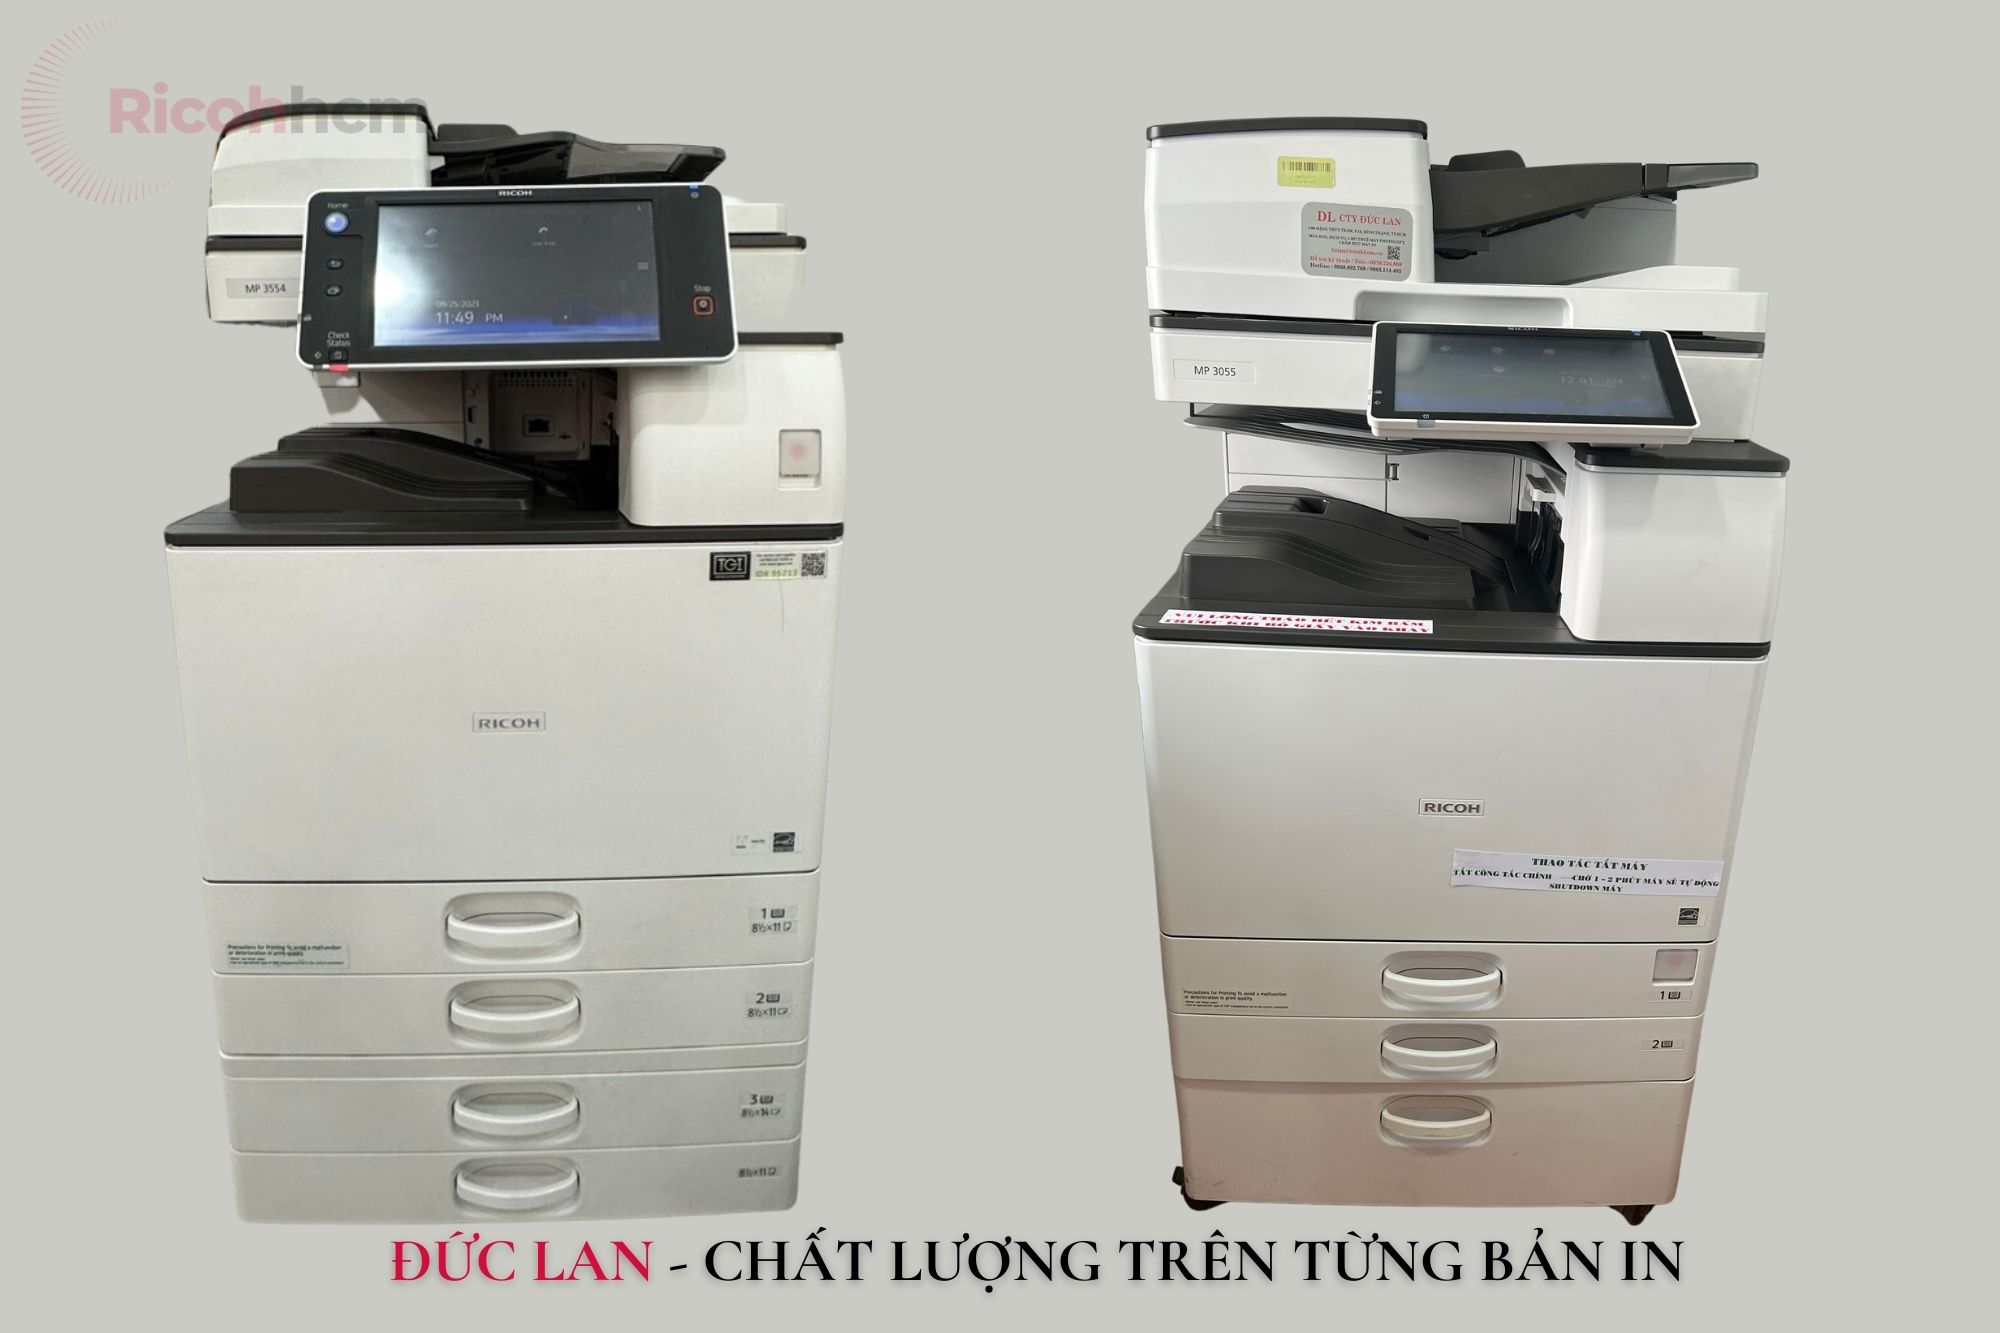 Đức Lan cung cấp dịch vụ cho thuê máy photo từ 2007, với 16 năm kinh nghiệm, photocopy. Đức Lan tự hào có thể hỗ trợ mọi khách hàng với những sản phẩm tốt nhất.